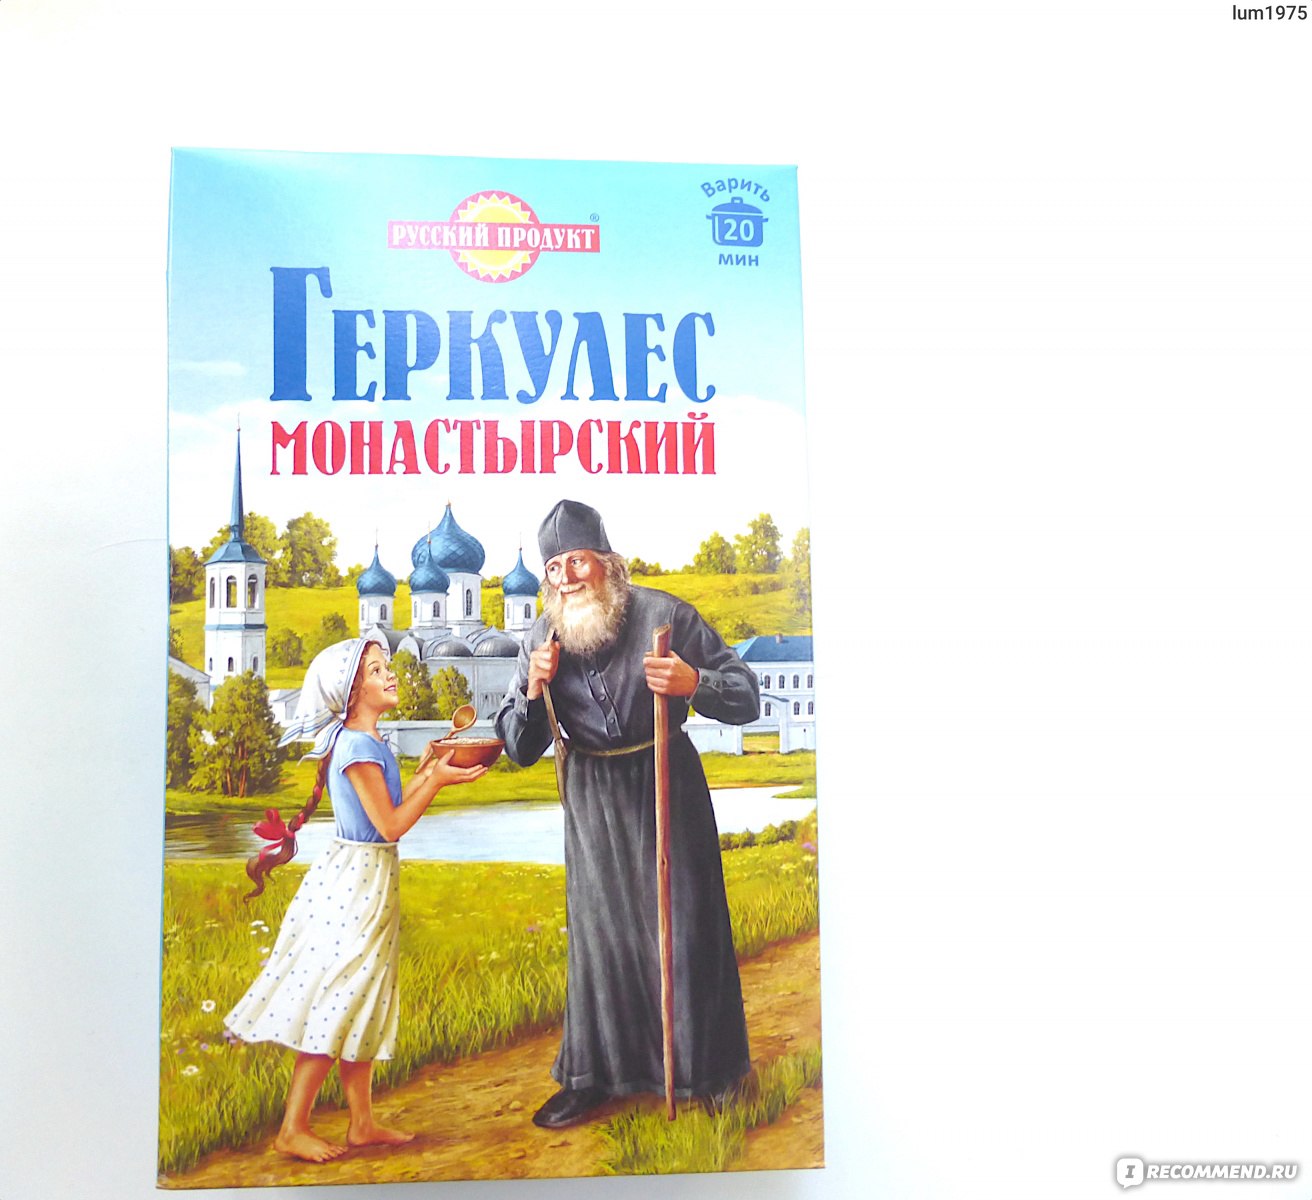 Геркулес монастырский русский продукт